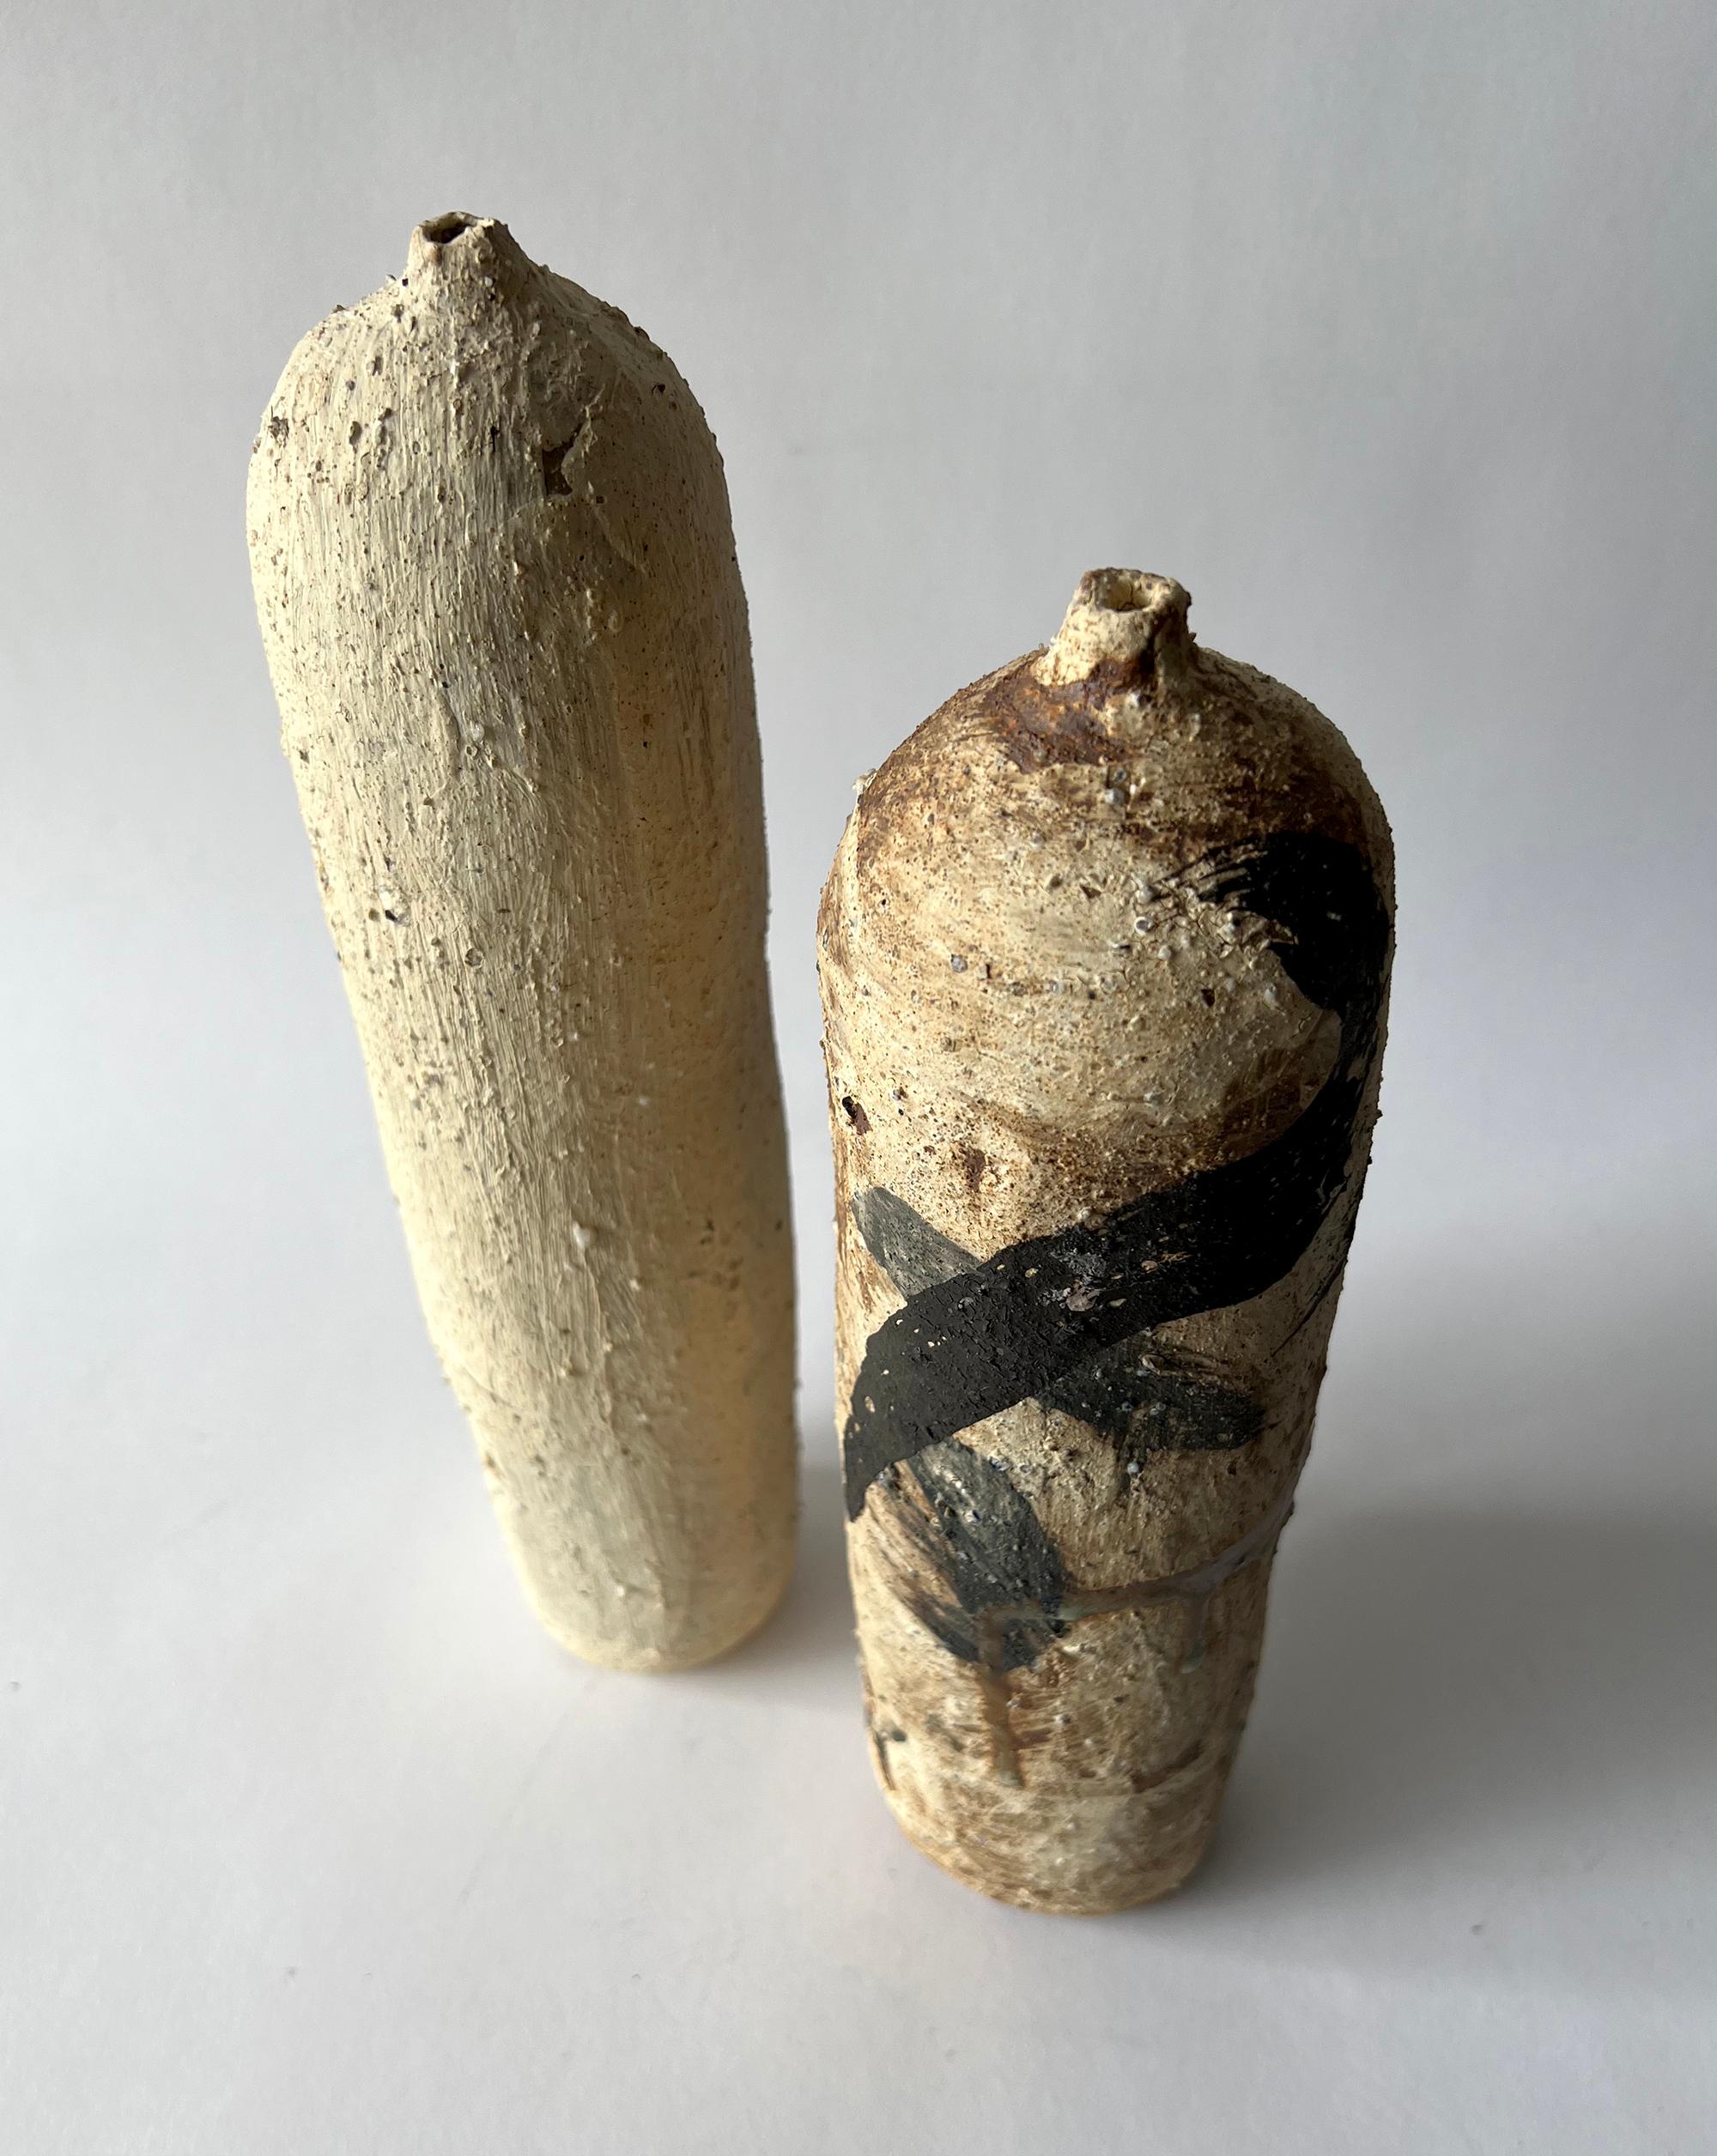 Vases bouteilles cylindriques de style japonais contemporain Shigaraki créés par l'artiste Justin Hoffman de la baie de San Francisco. Les bouteilles ont une hauteur de 11,75